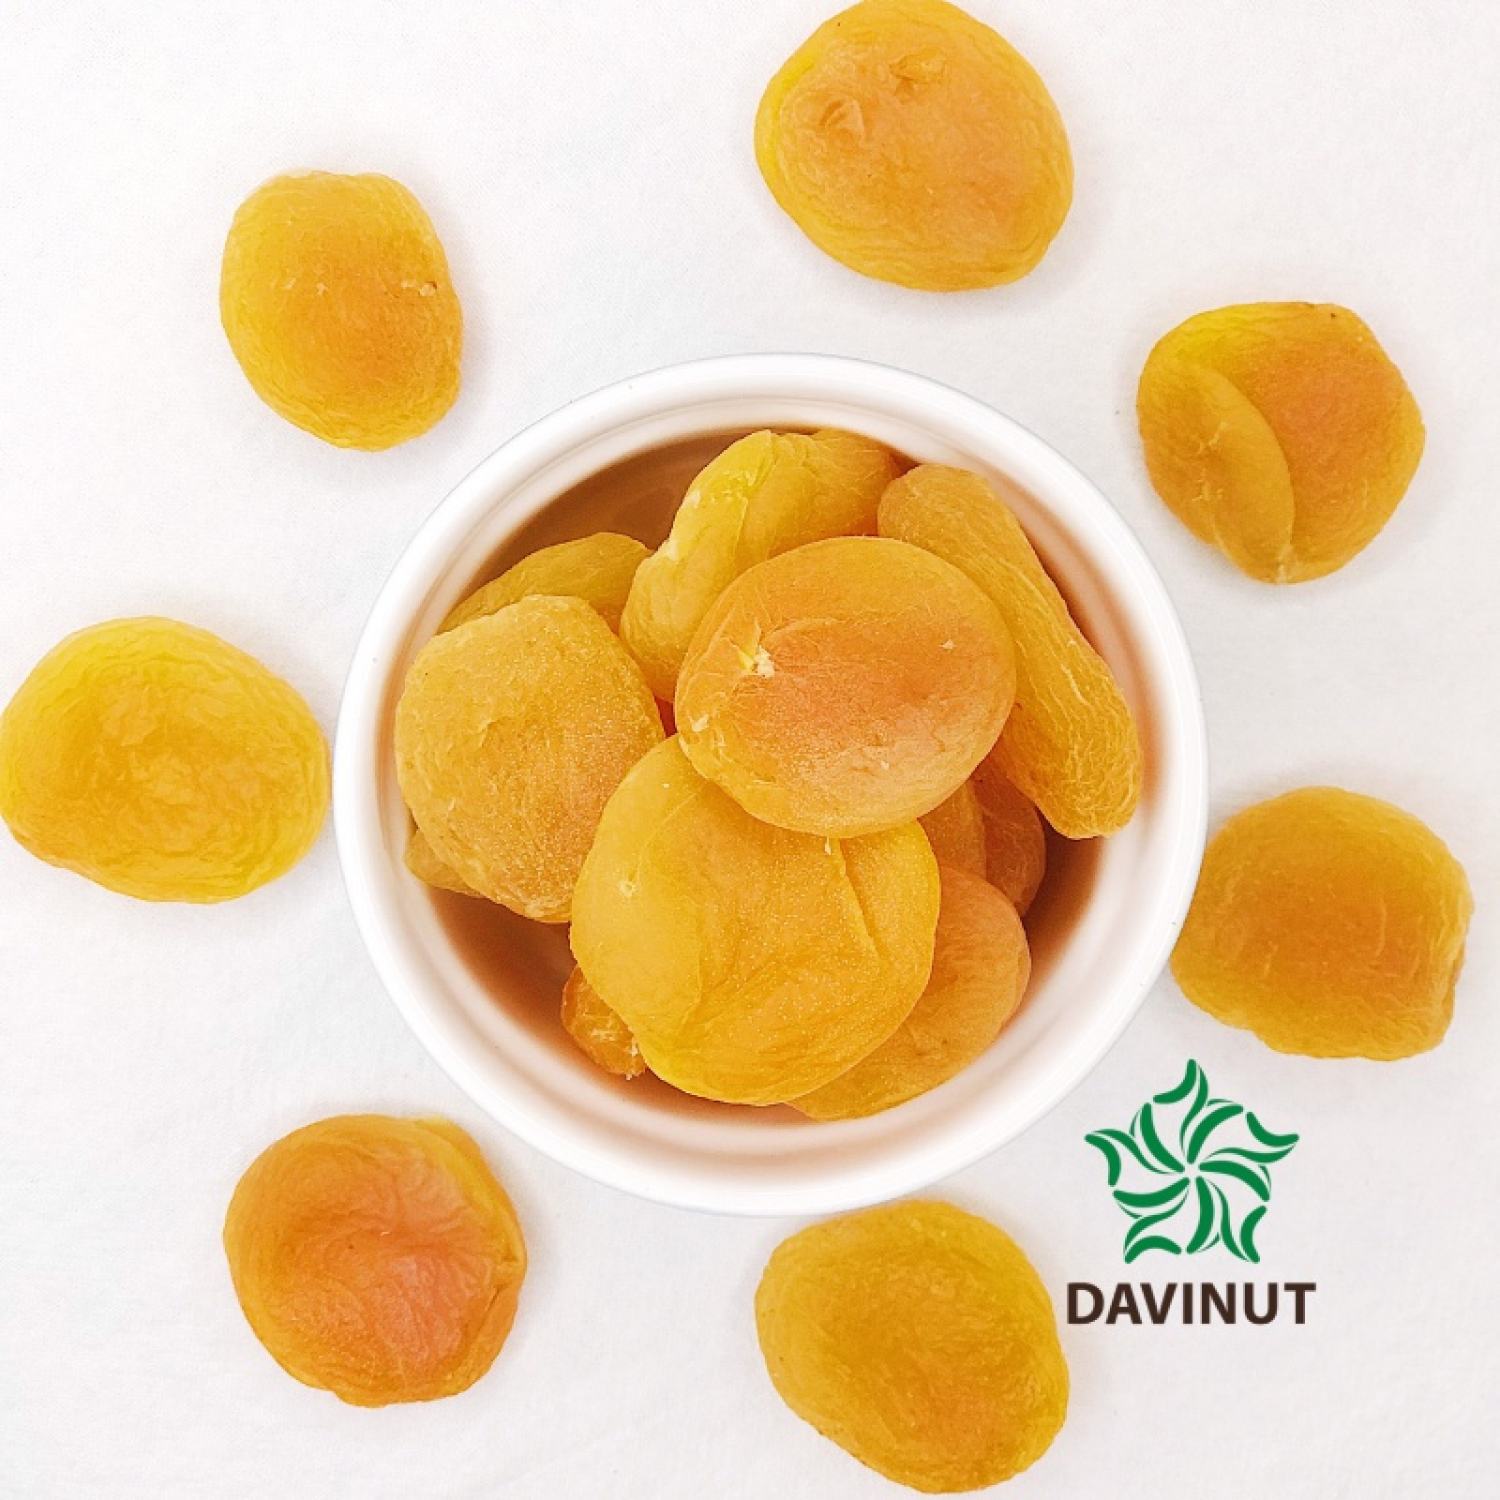 Davinut Turkish dried apricot bitter apricot without sugar natural